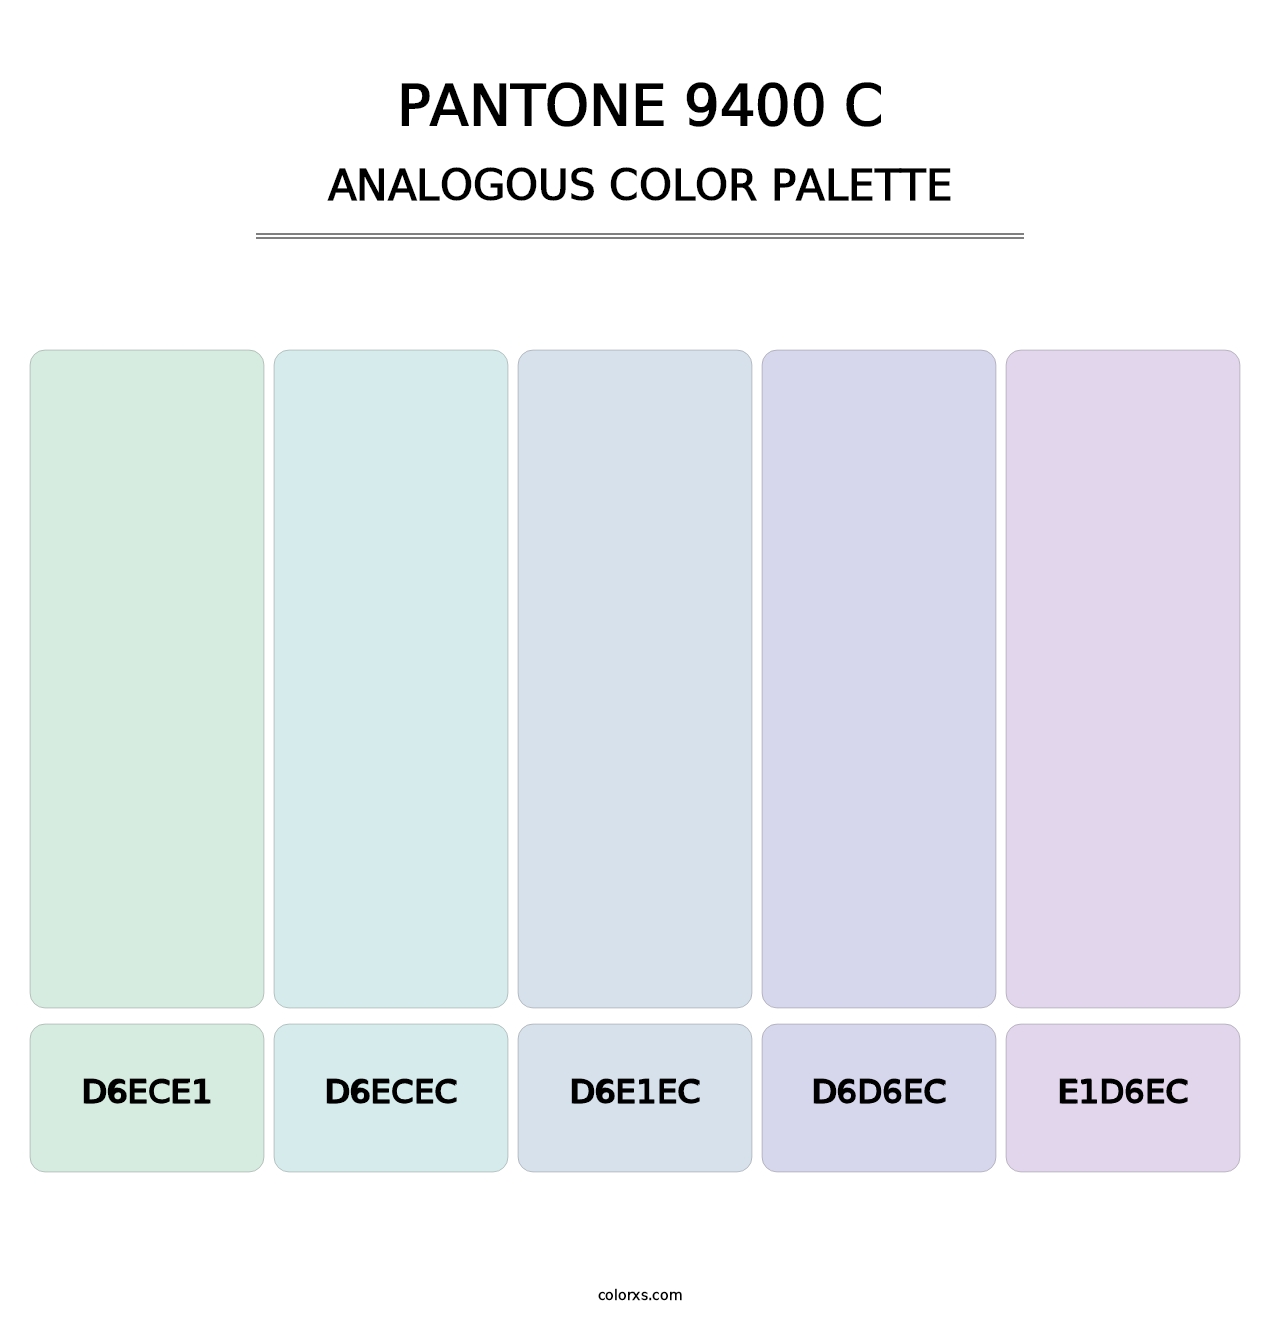 PANTONE 9400 C - Analogous Color Palette